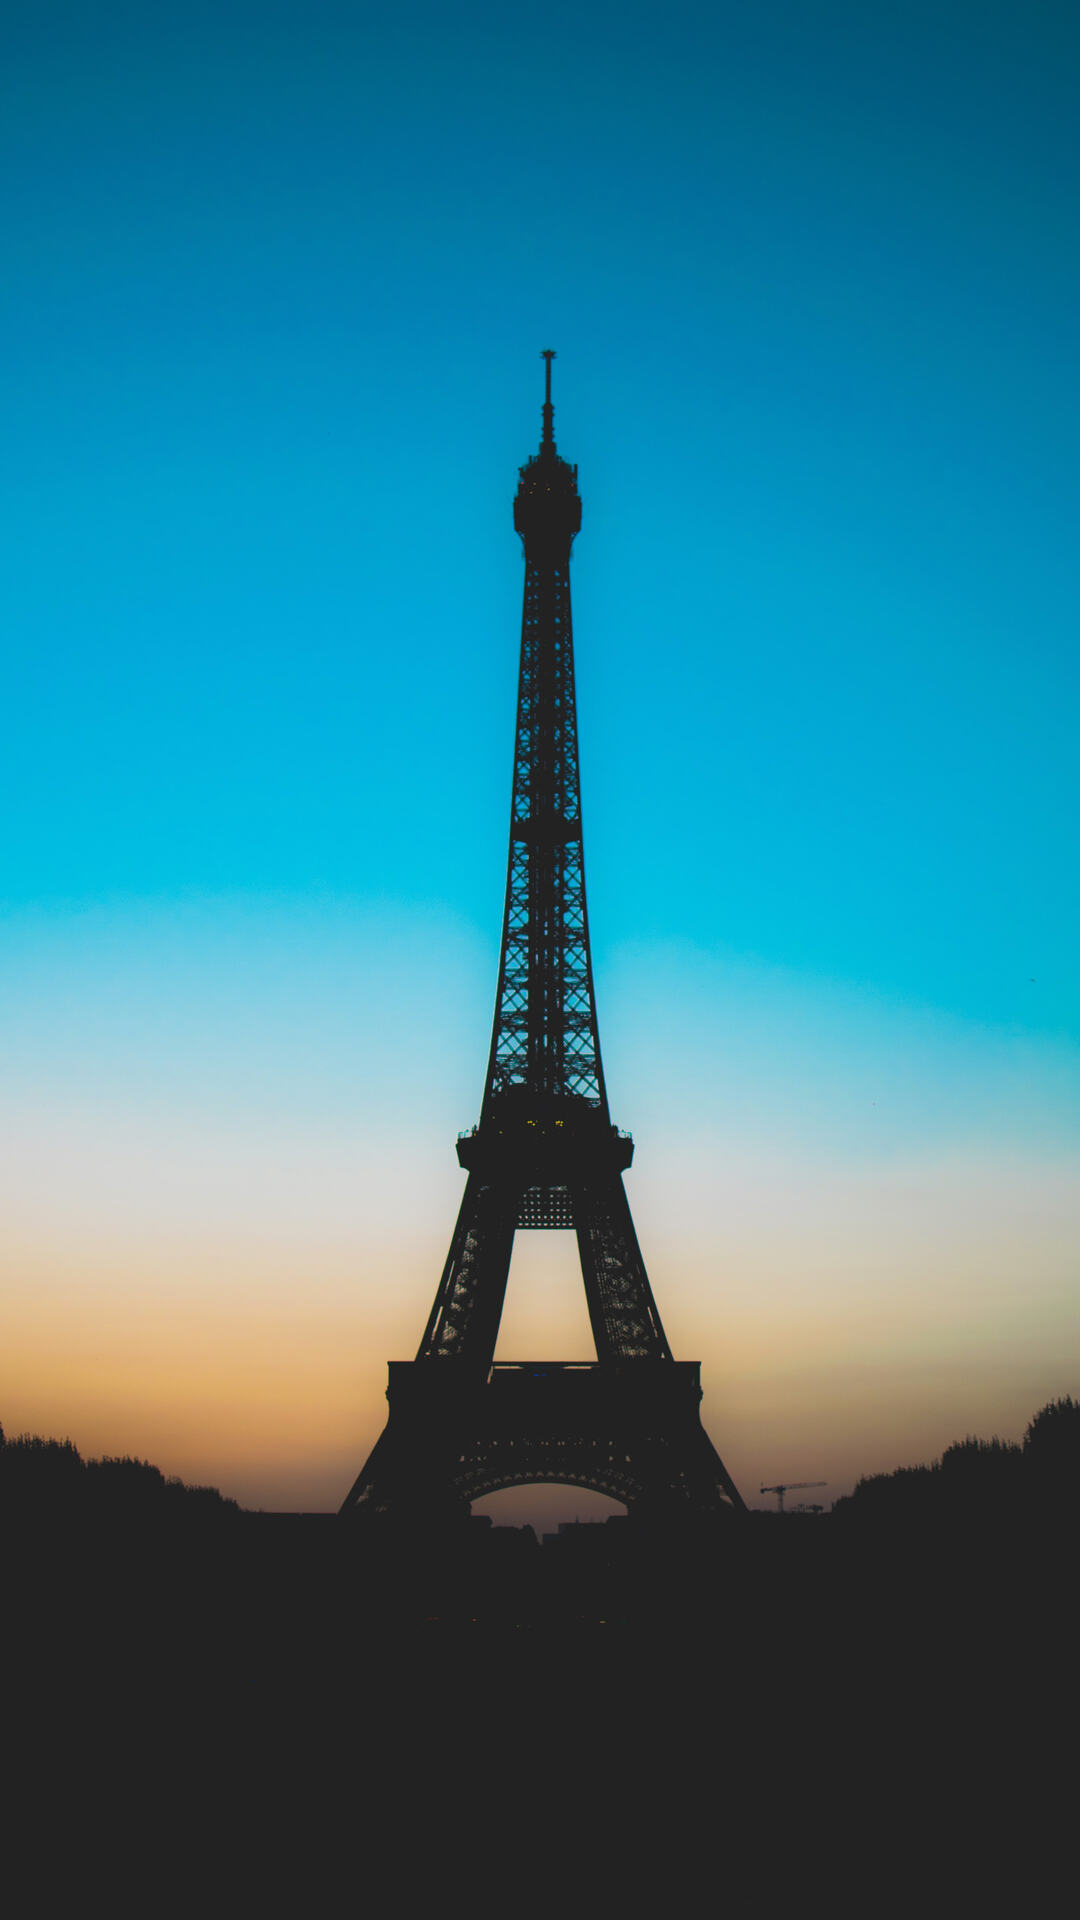 来自浪漫城市法国巴黎的埃菲尔铁塔高清摄影手机壁纸推荐下载第1张壁纸